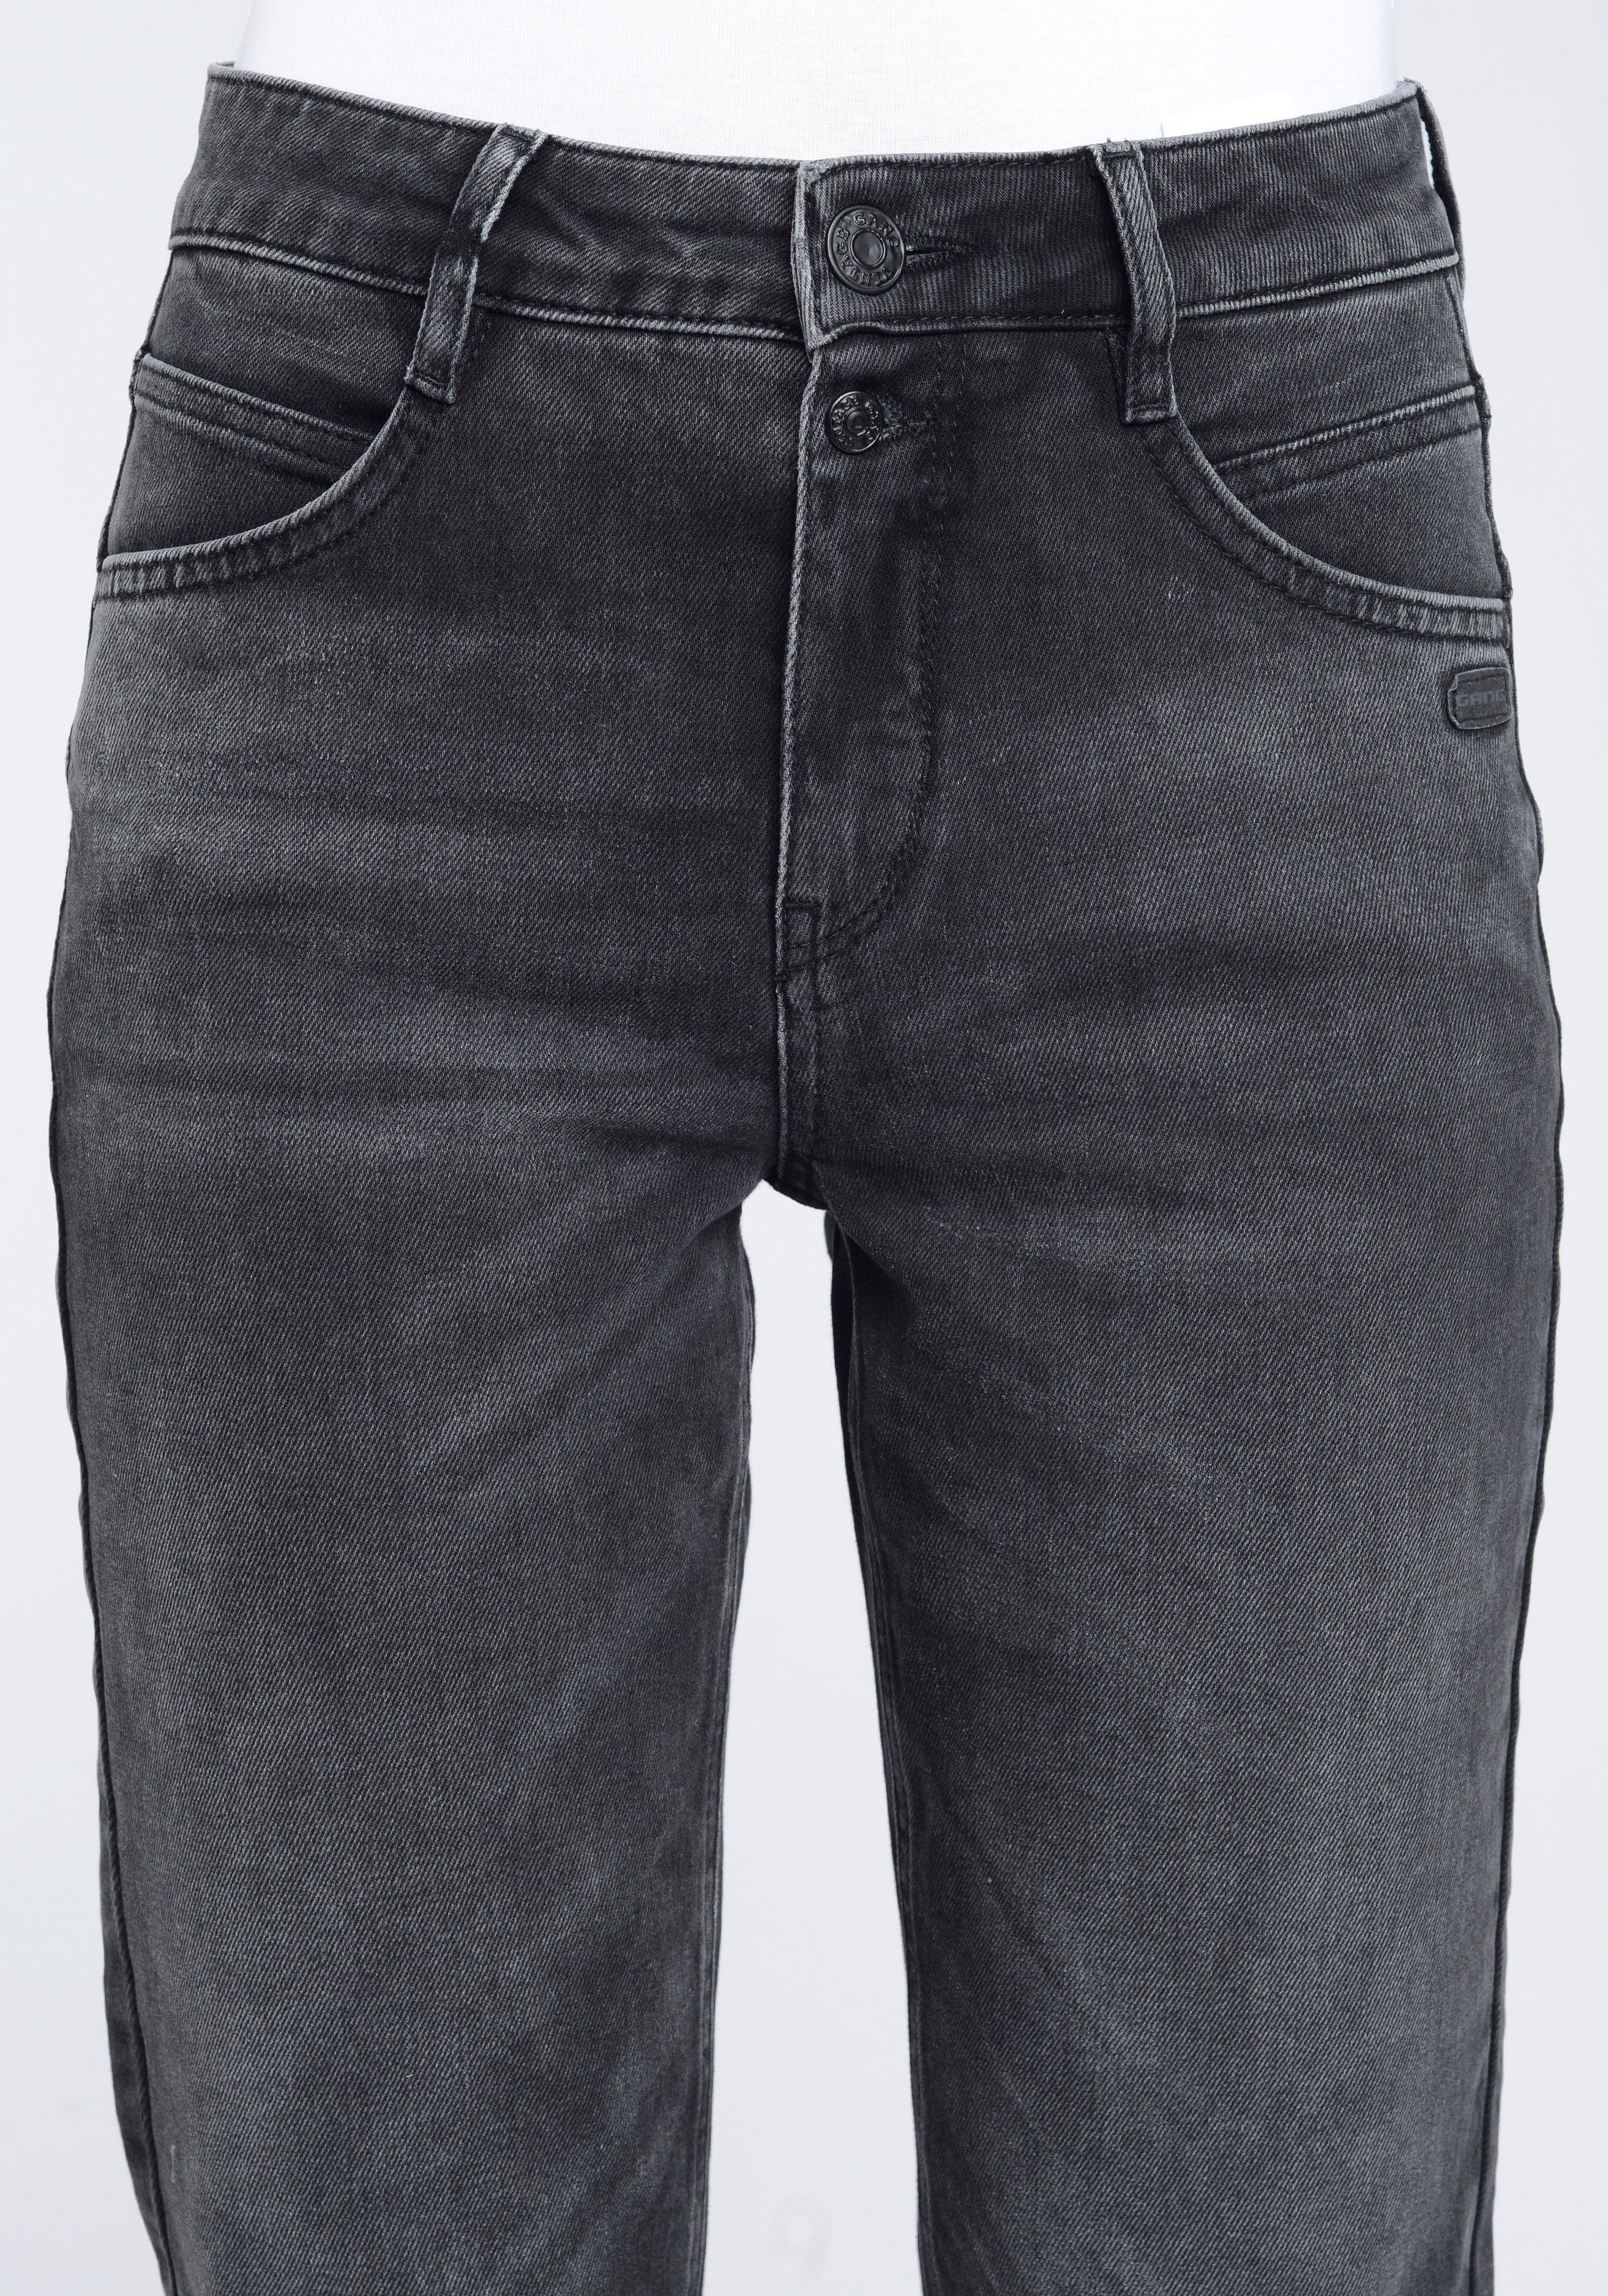 2-Knopf-Verschluss GANG Grey verkürzter Beinlänge mit Mom-Jeans Vintage 94ORA